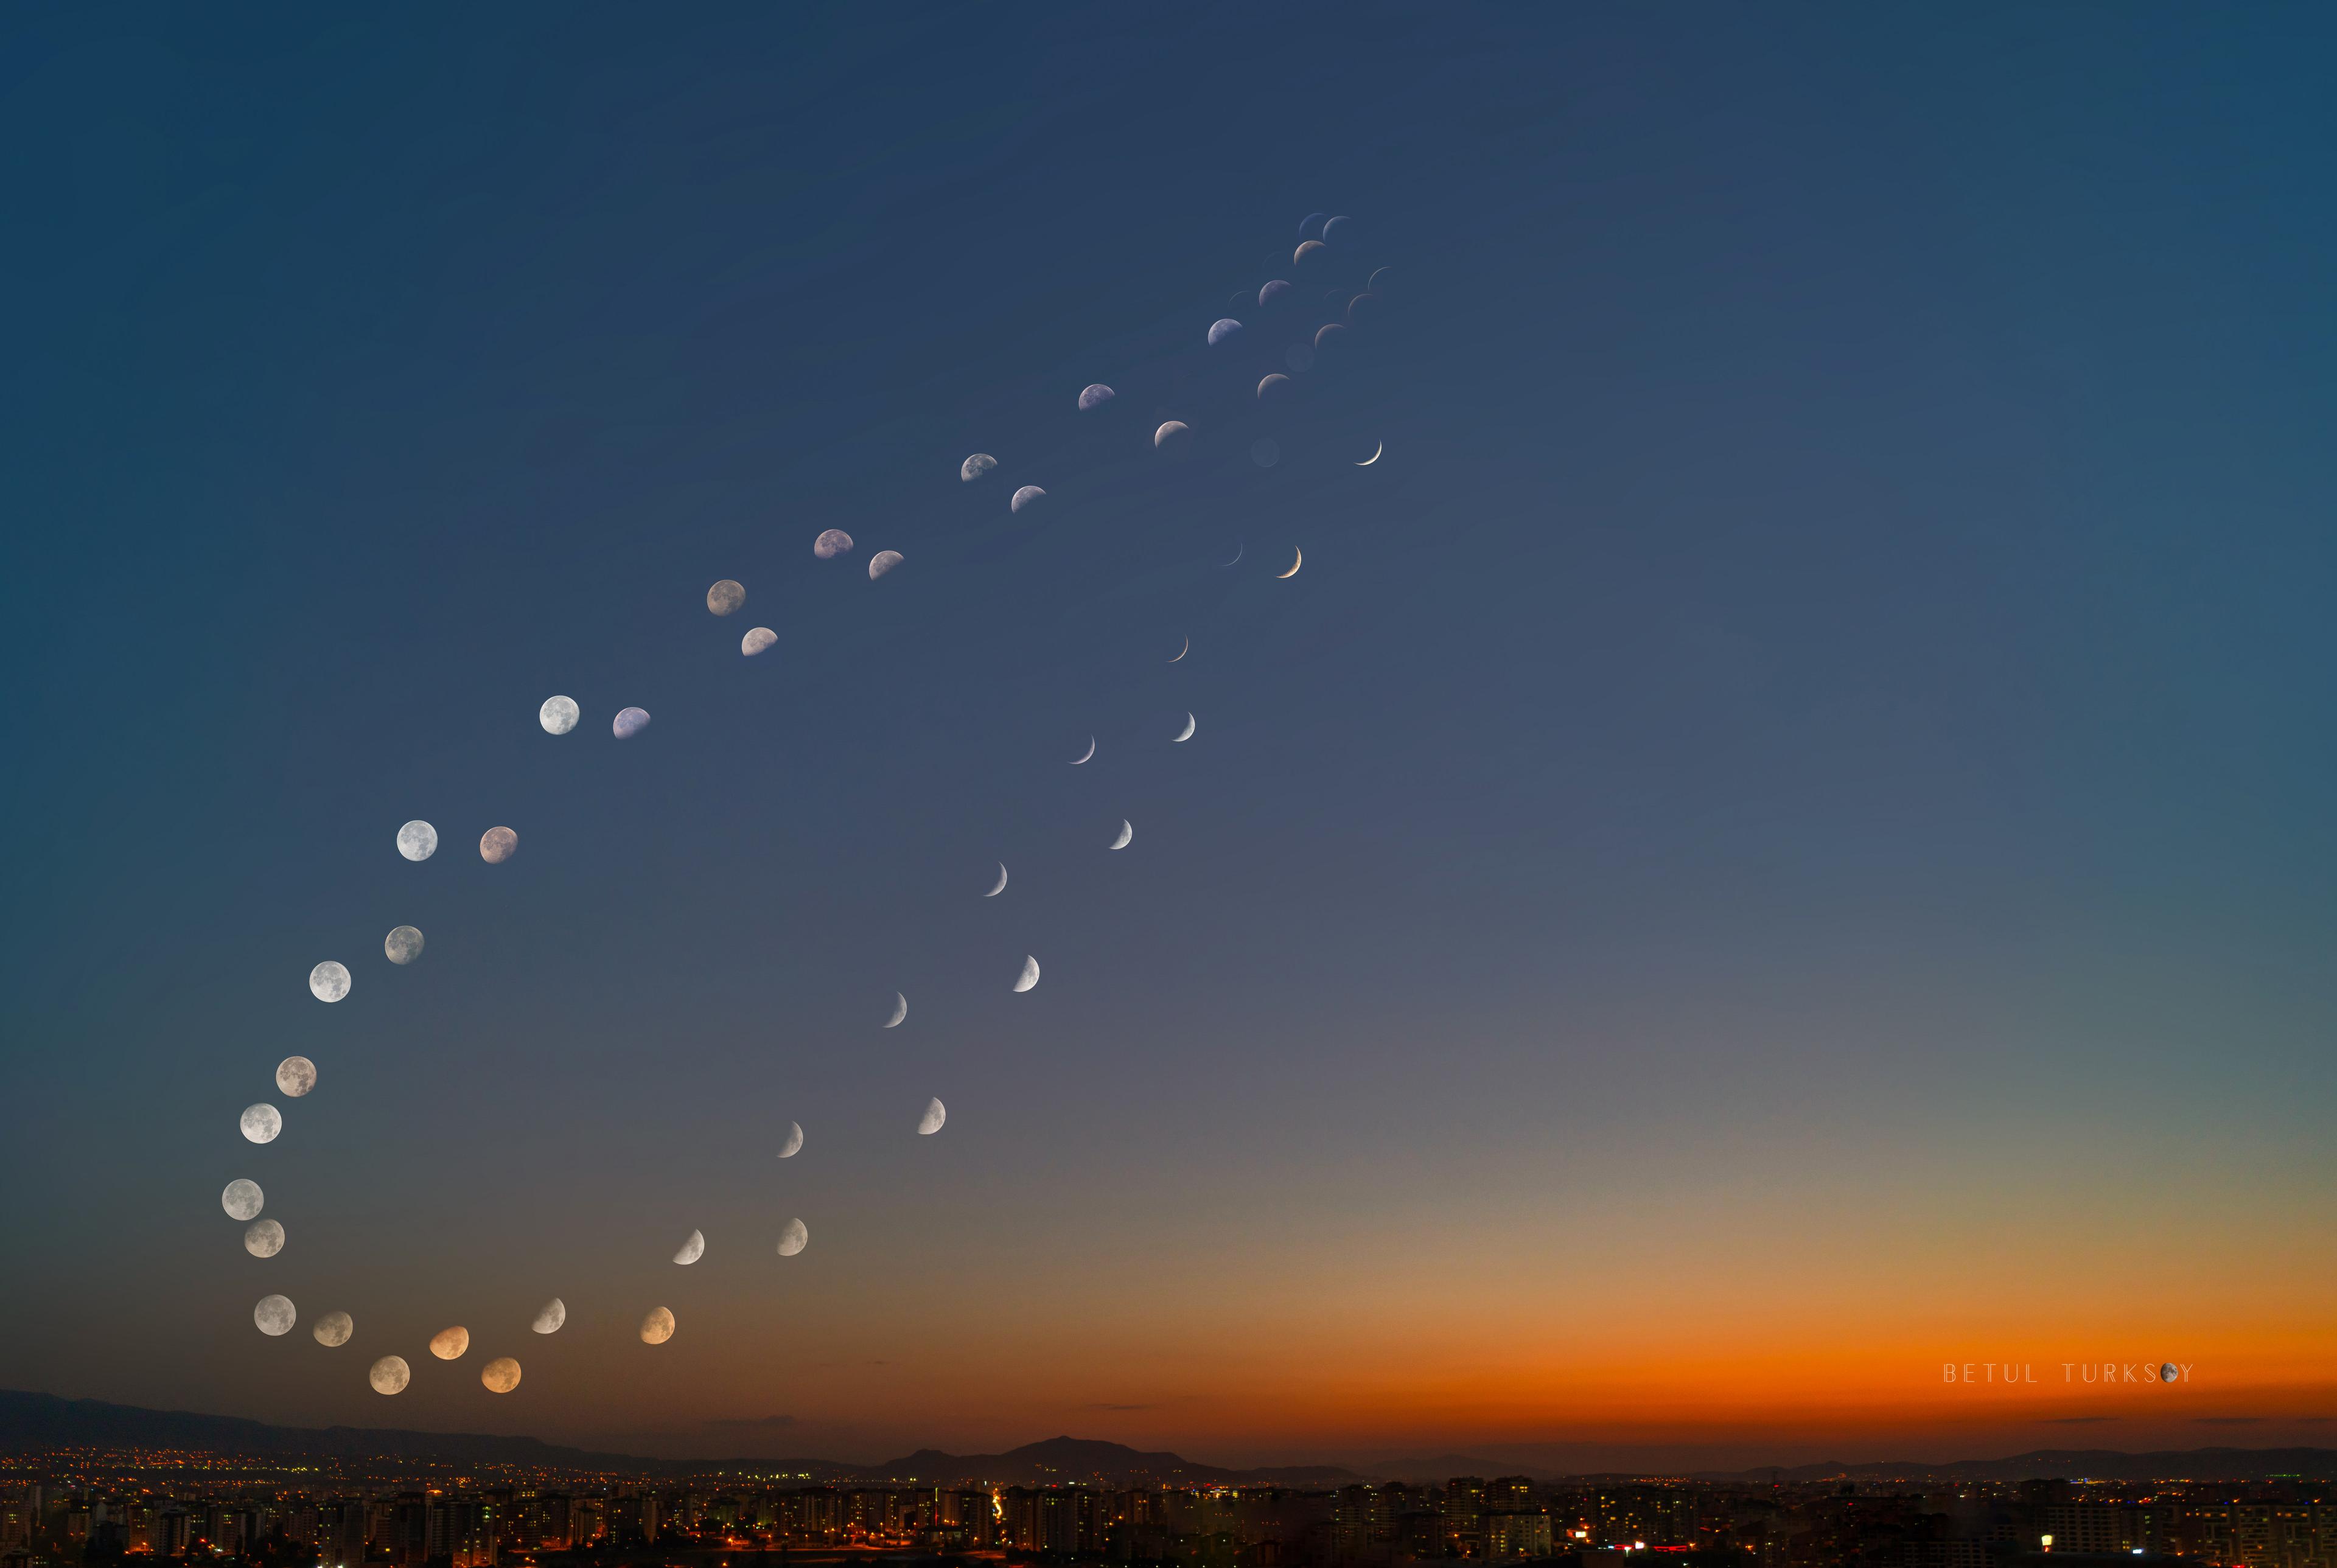 مشهد طبيعي عريض في تركيّا مع صور عديدة للقمر في أطوار مختلفة تتتبَّع شكل رقم 8 مزدوج في السماء